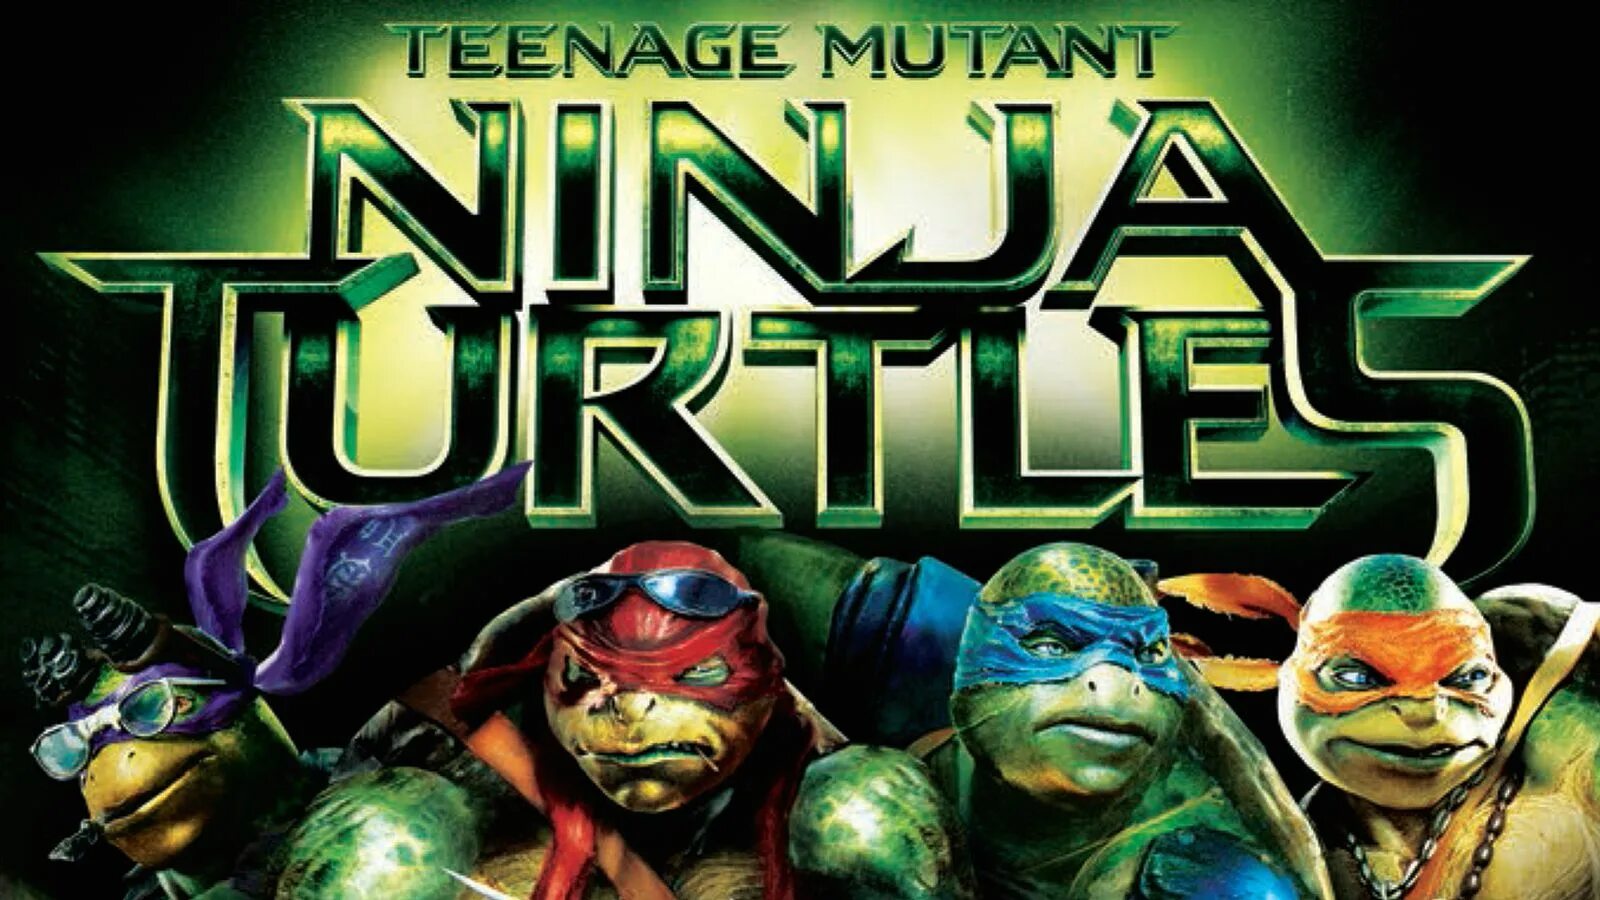 Tmnt wrath of the mutants. Тинейдж МУТАНТ ниндзя Туртлес. Teenage Mutant Ninja Turtles (игра, 2013). Teenage Mutant Ninja Turtles (игра, 2014). TMNT 2014 Черепашки ниндзя.